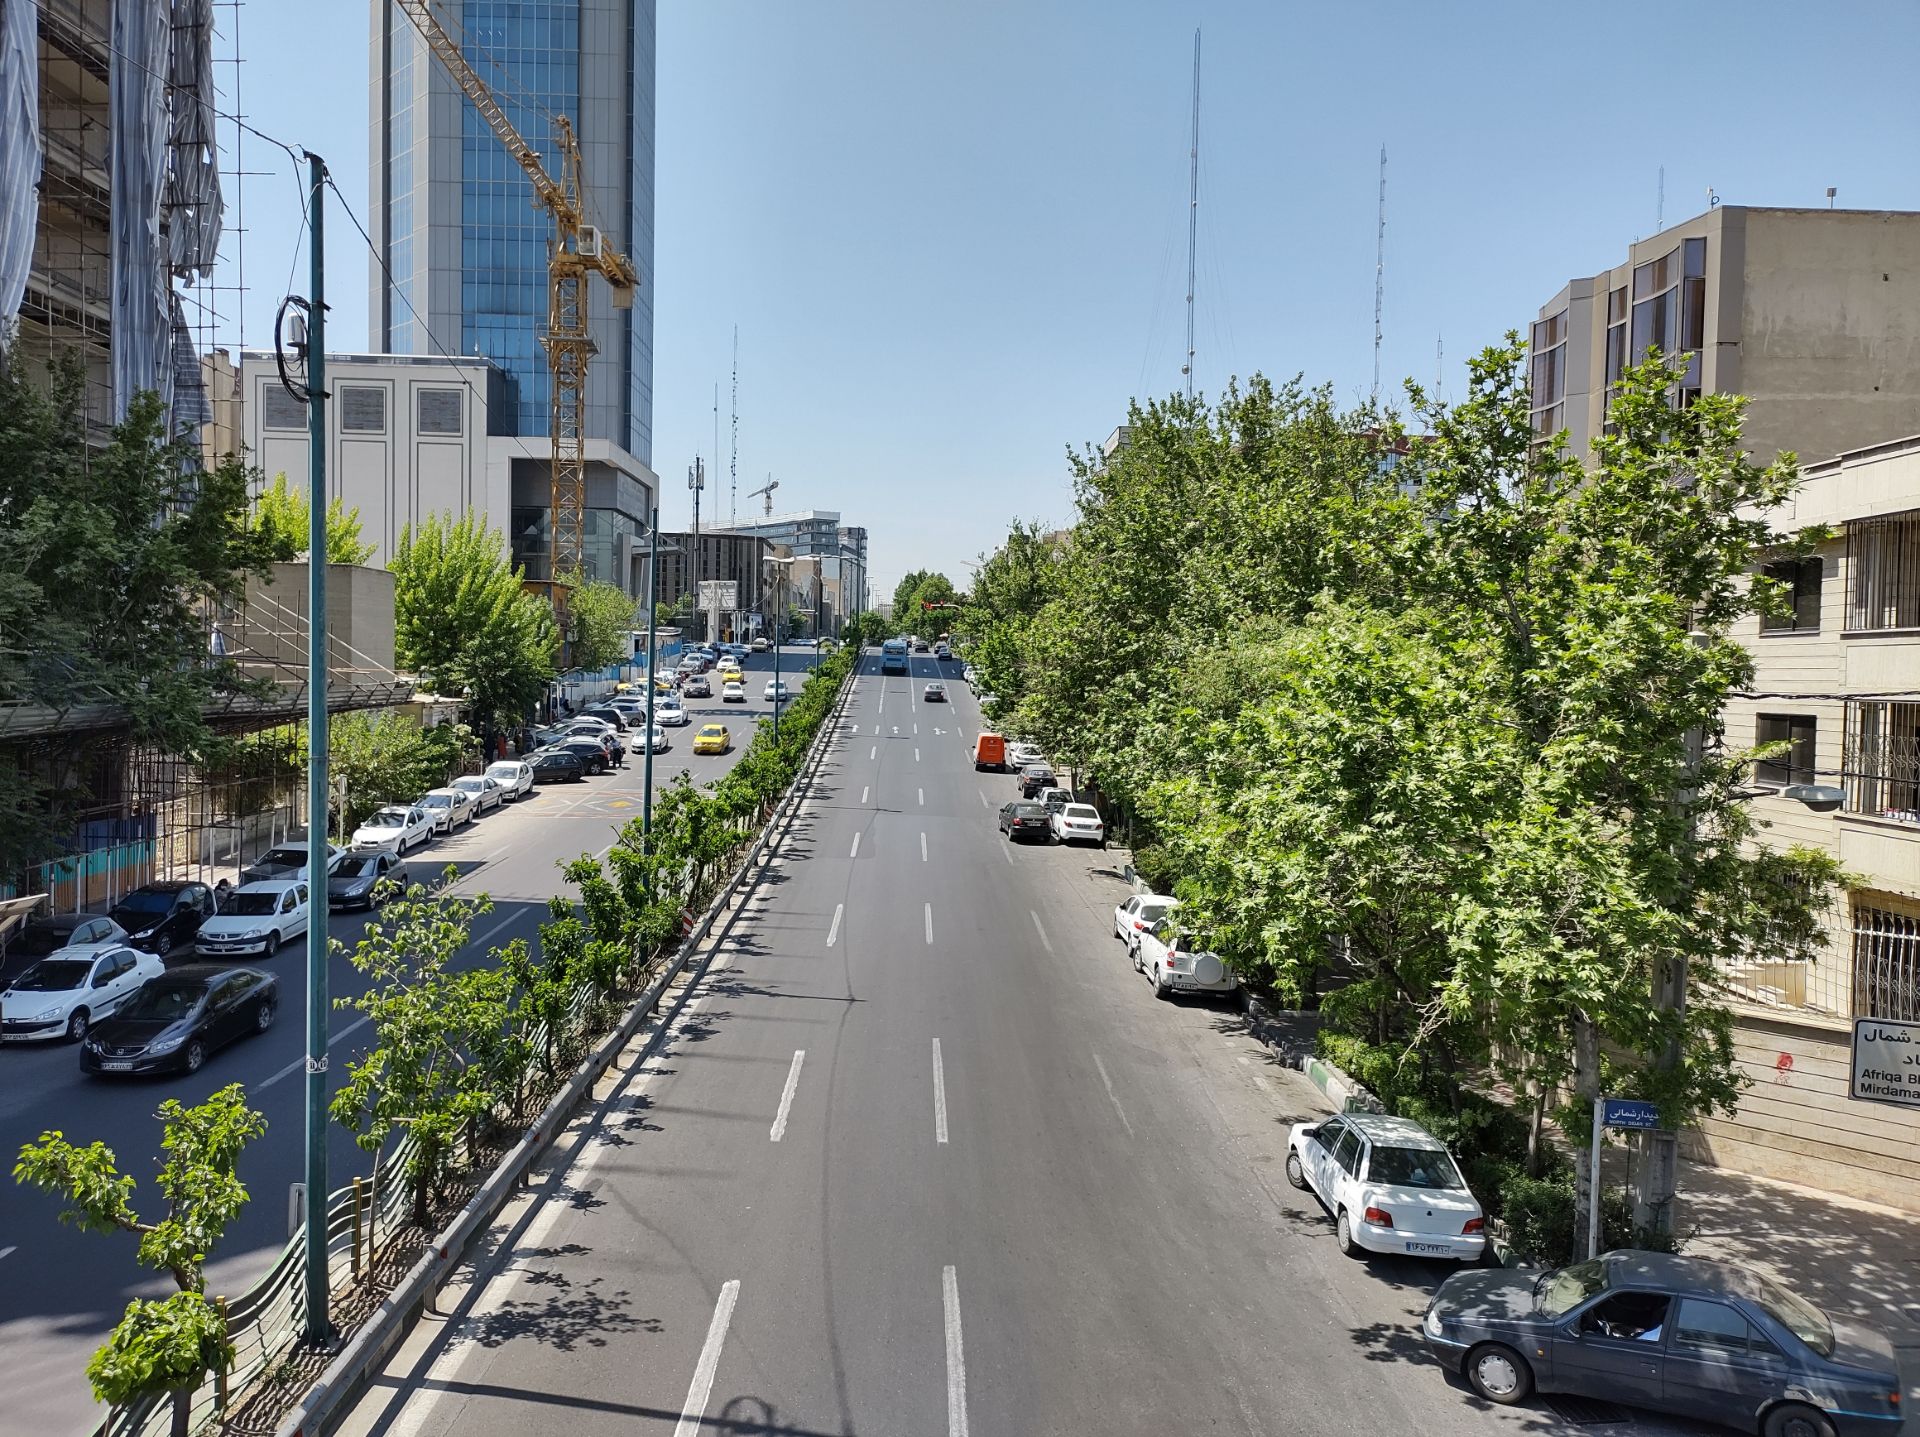 نمونه عکس دوربین اصلی موتورولا موتو جی ۹ پلاس در روز - خیابان حقانی